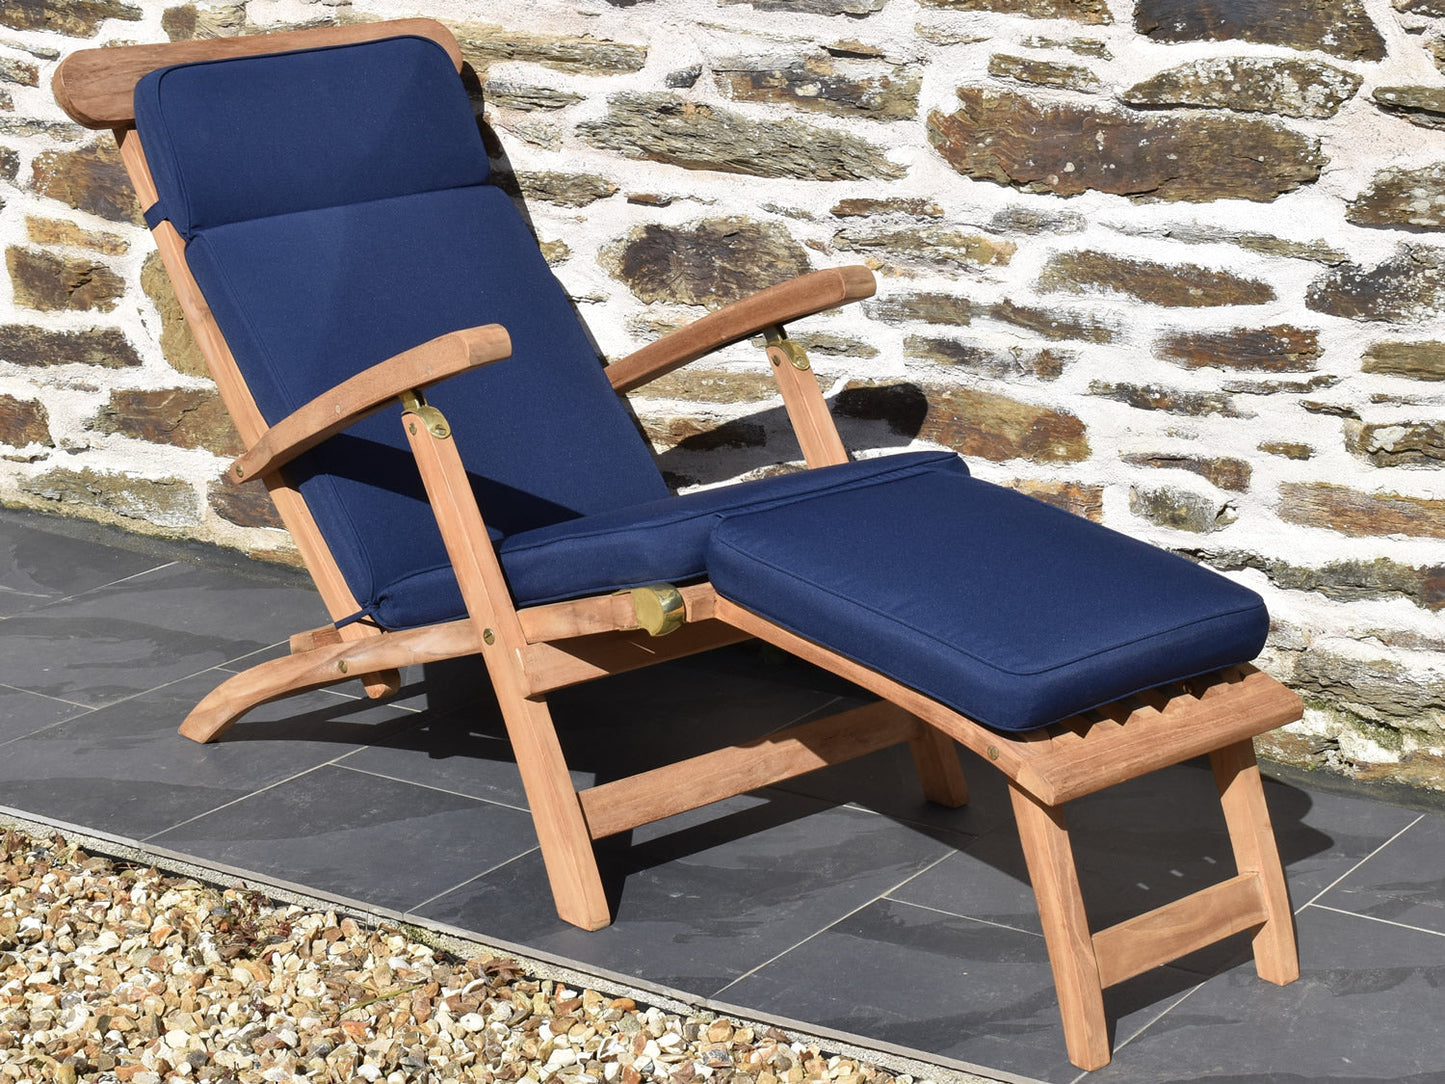 classic garden steamer chair cushion in traditional dark blue colour